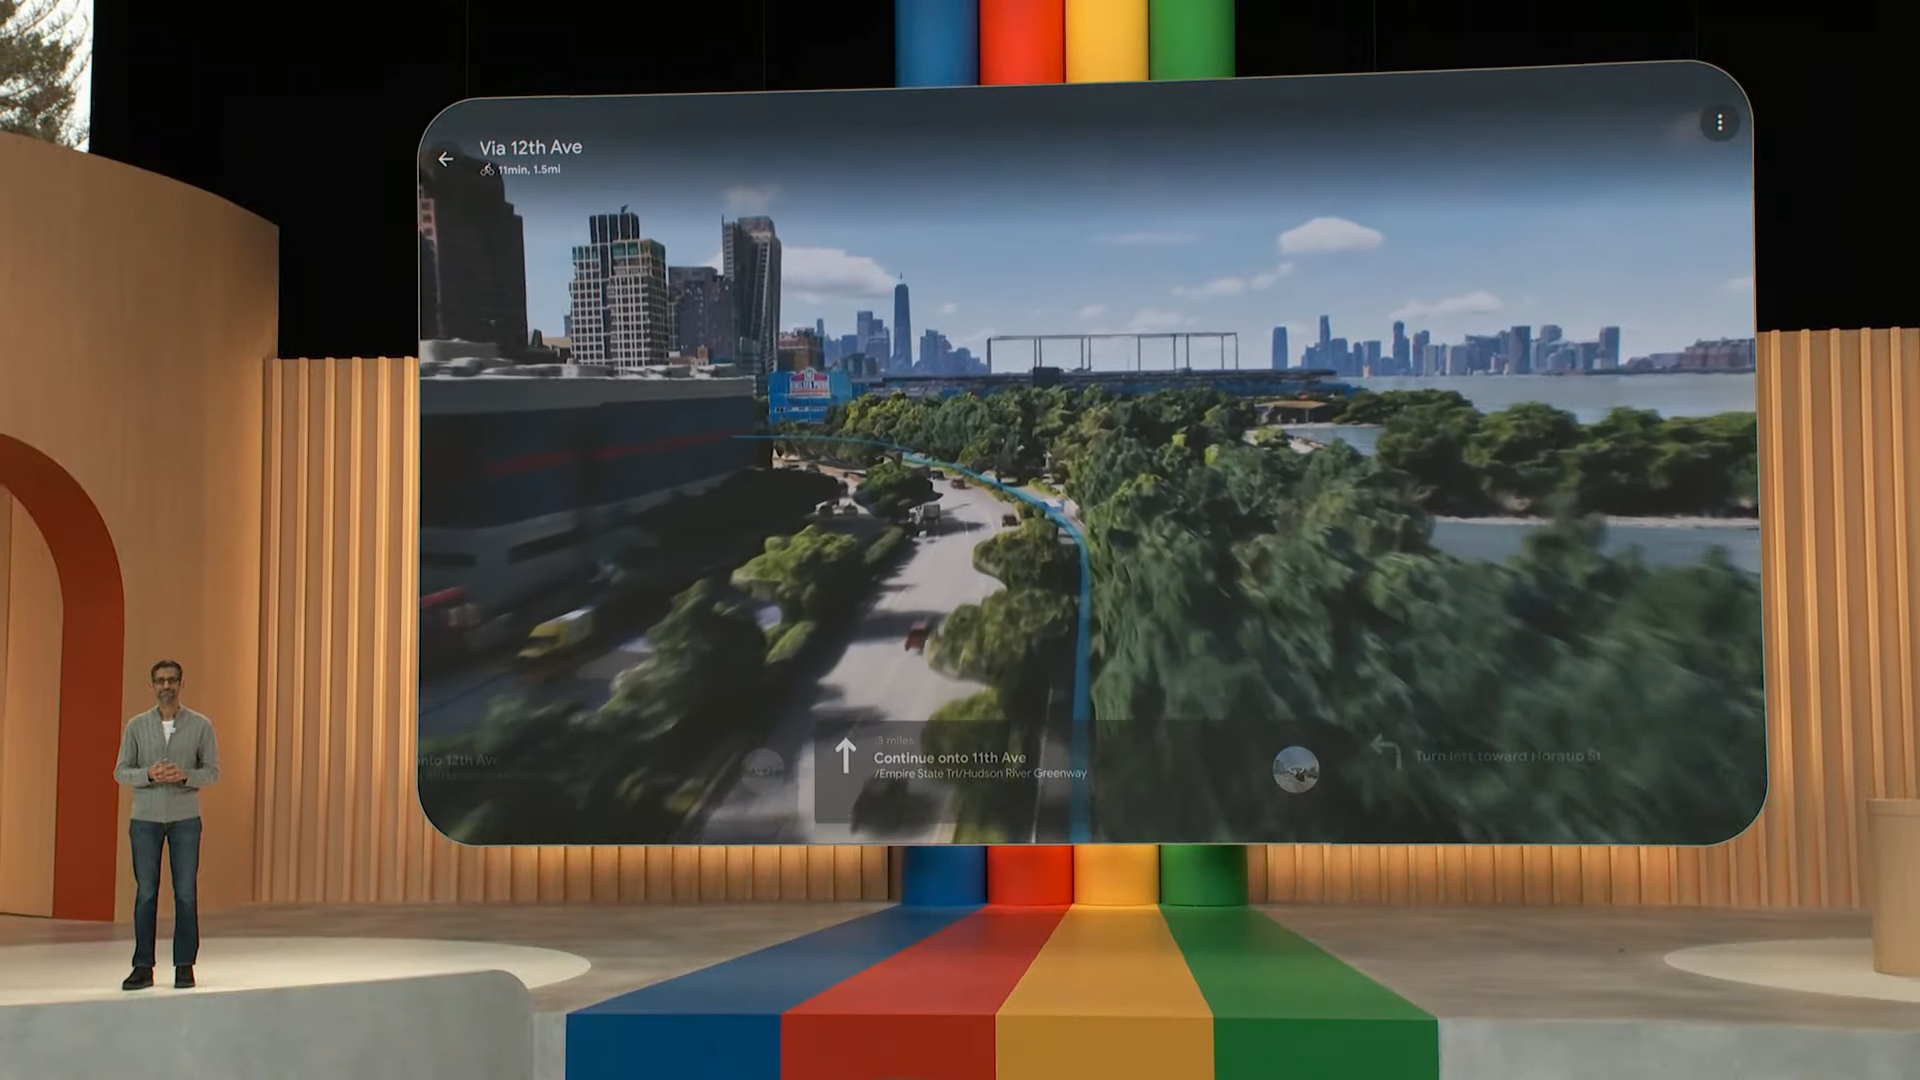 Nueva vista de Google Maps inmersiva en 3D.